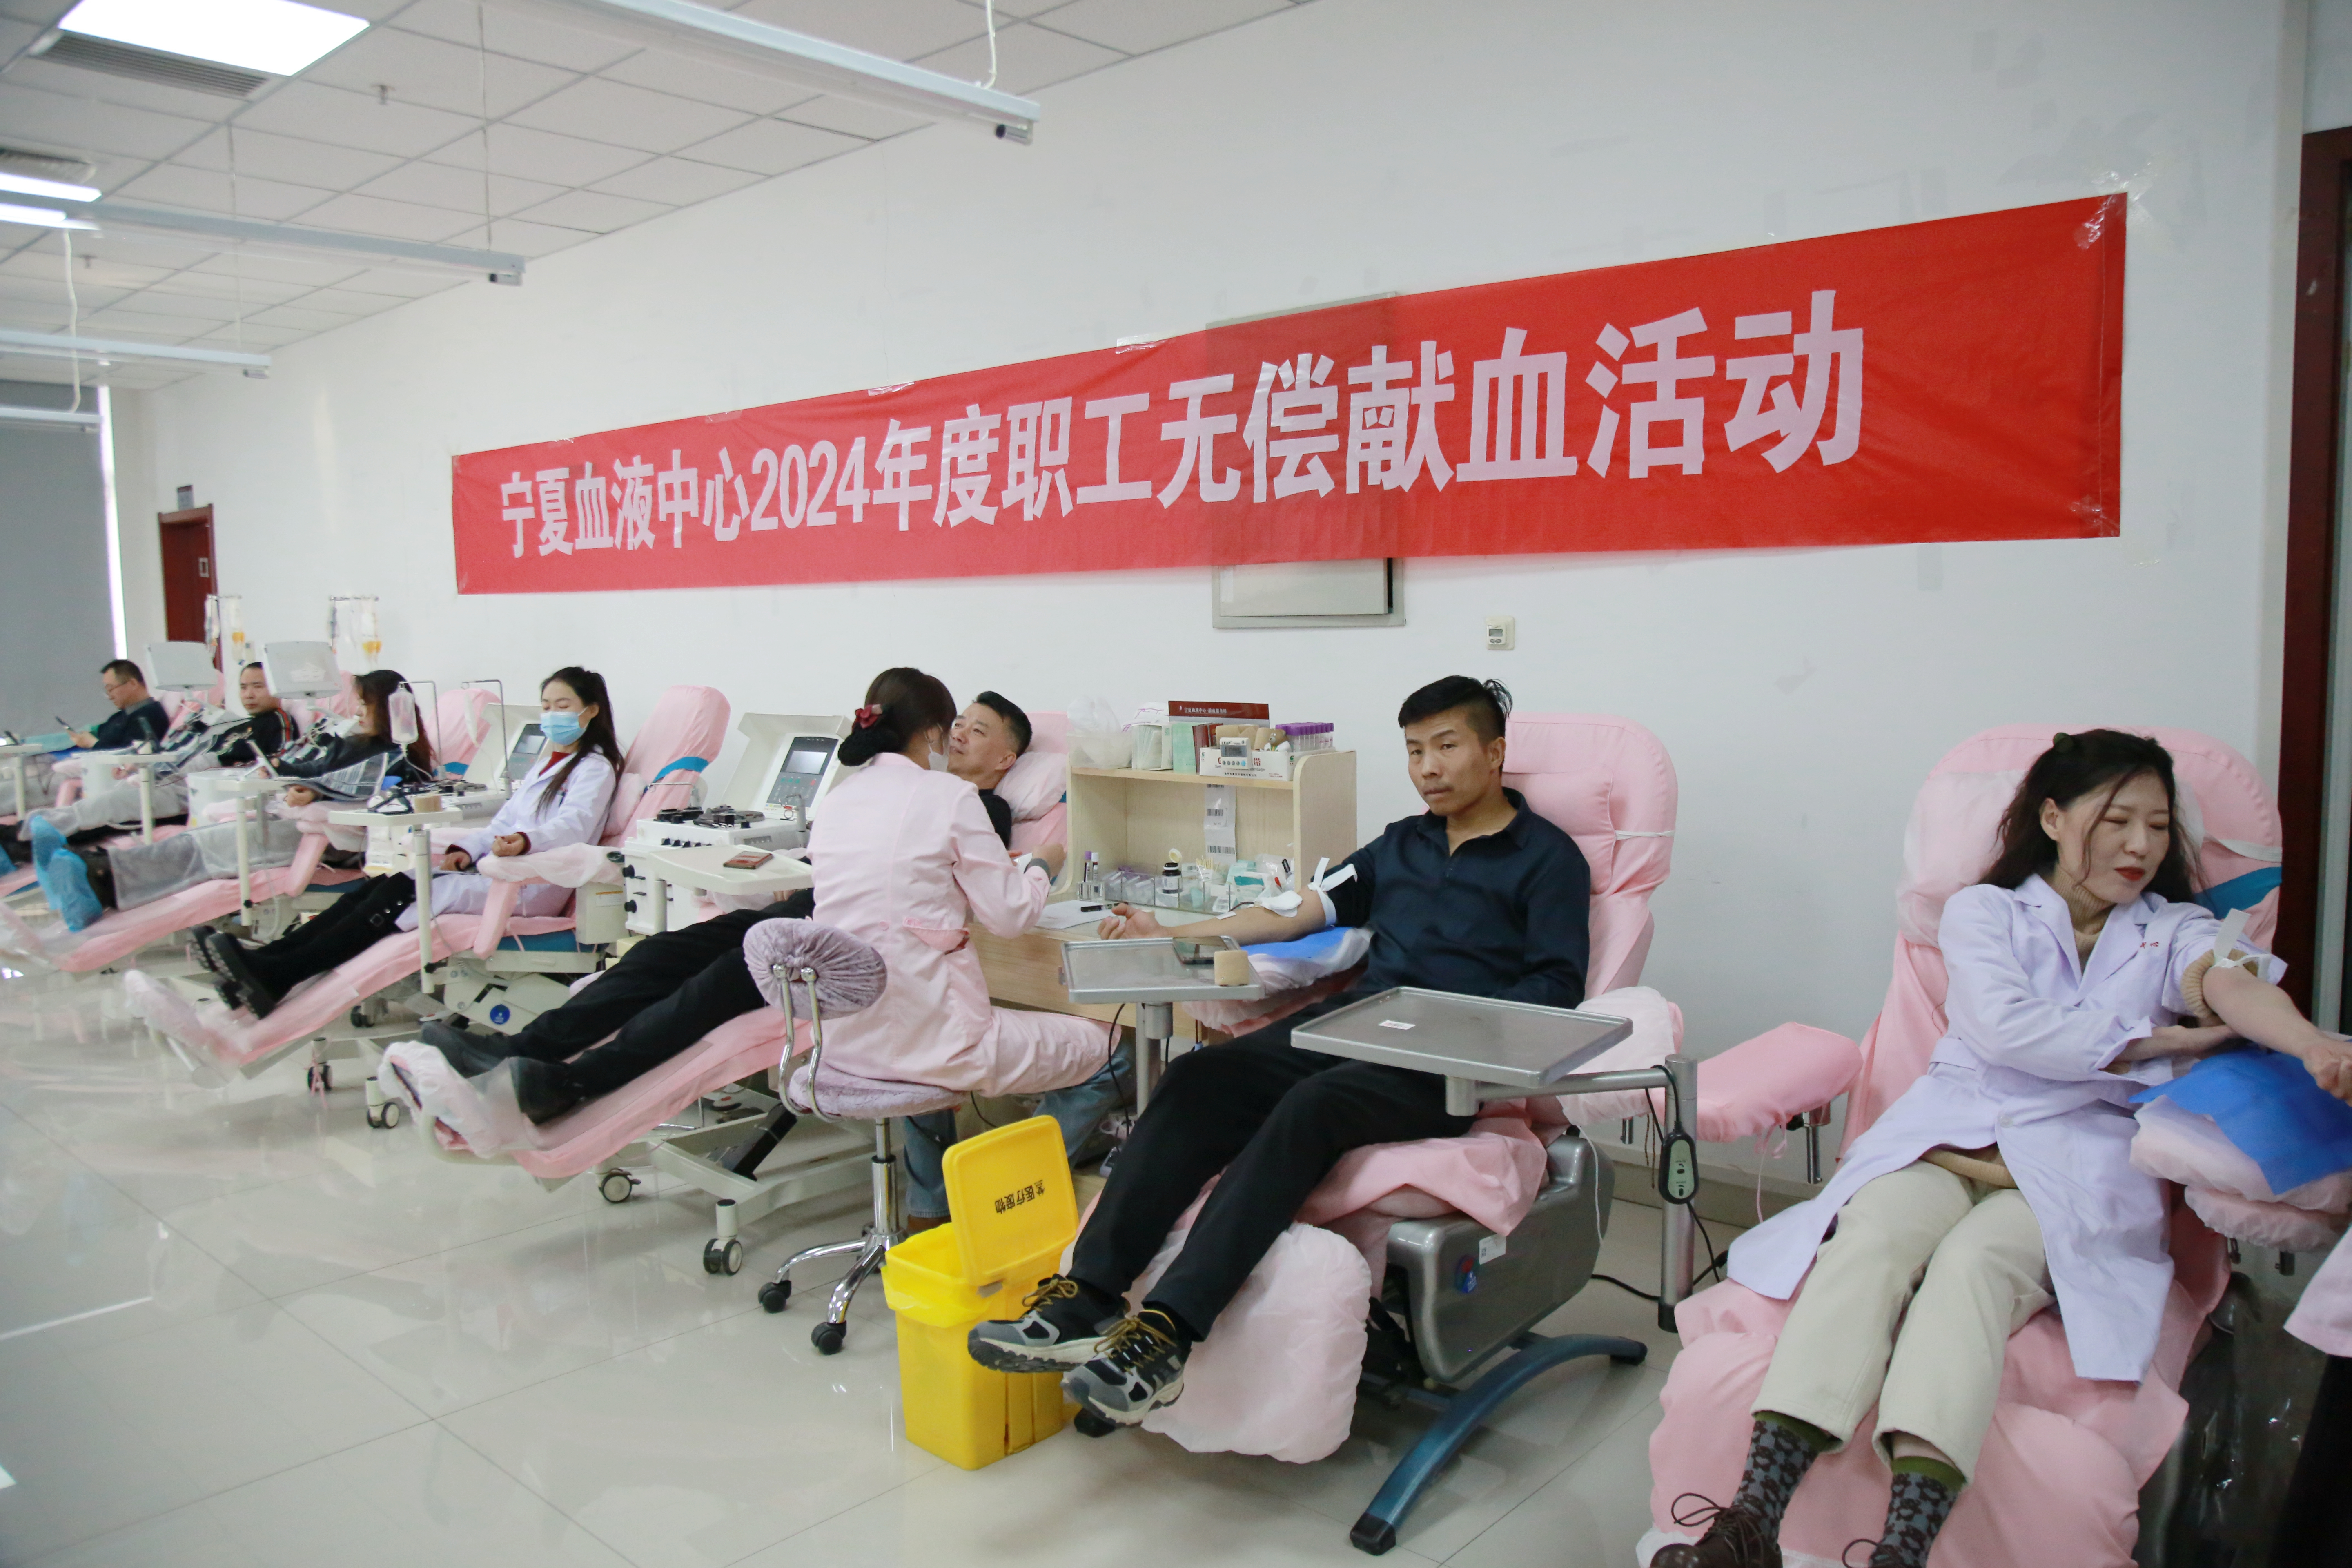 自治区血液中心组织职工集体献血